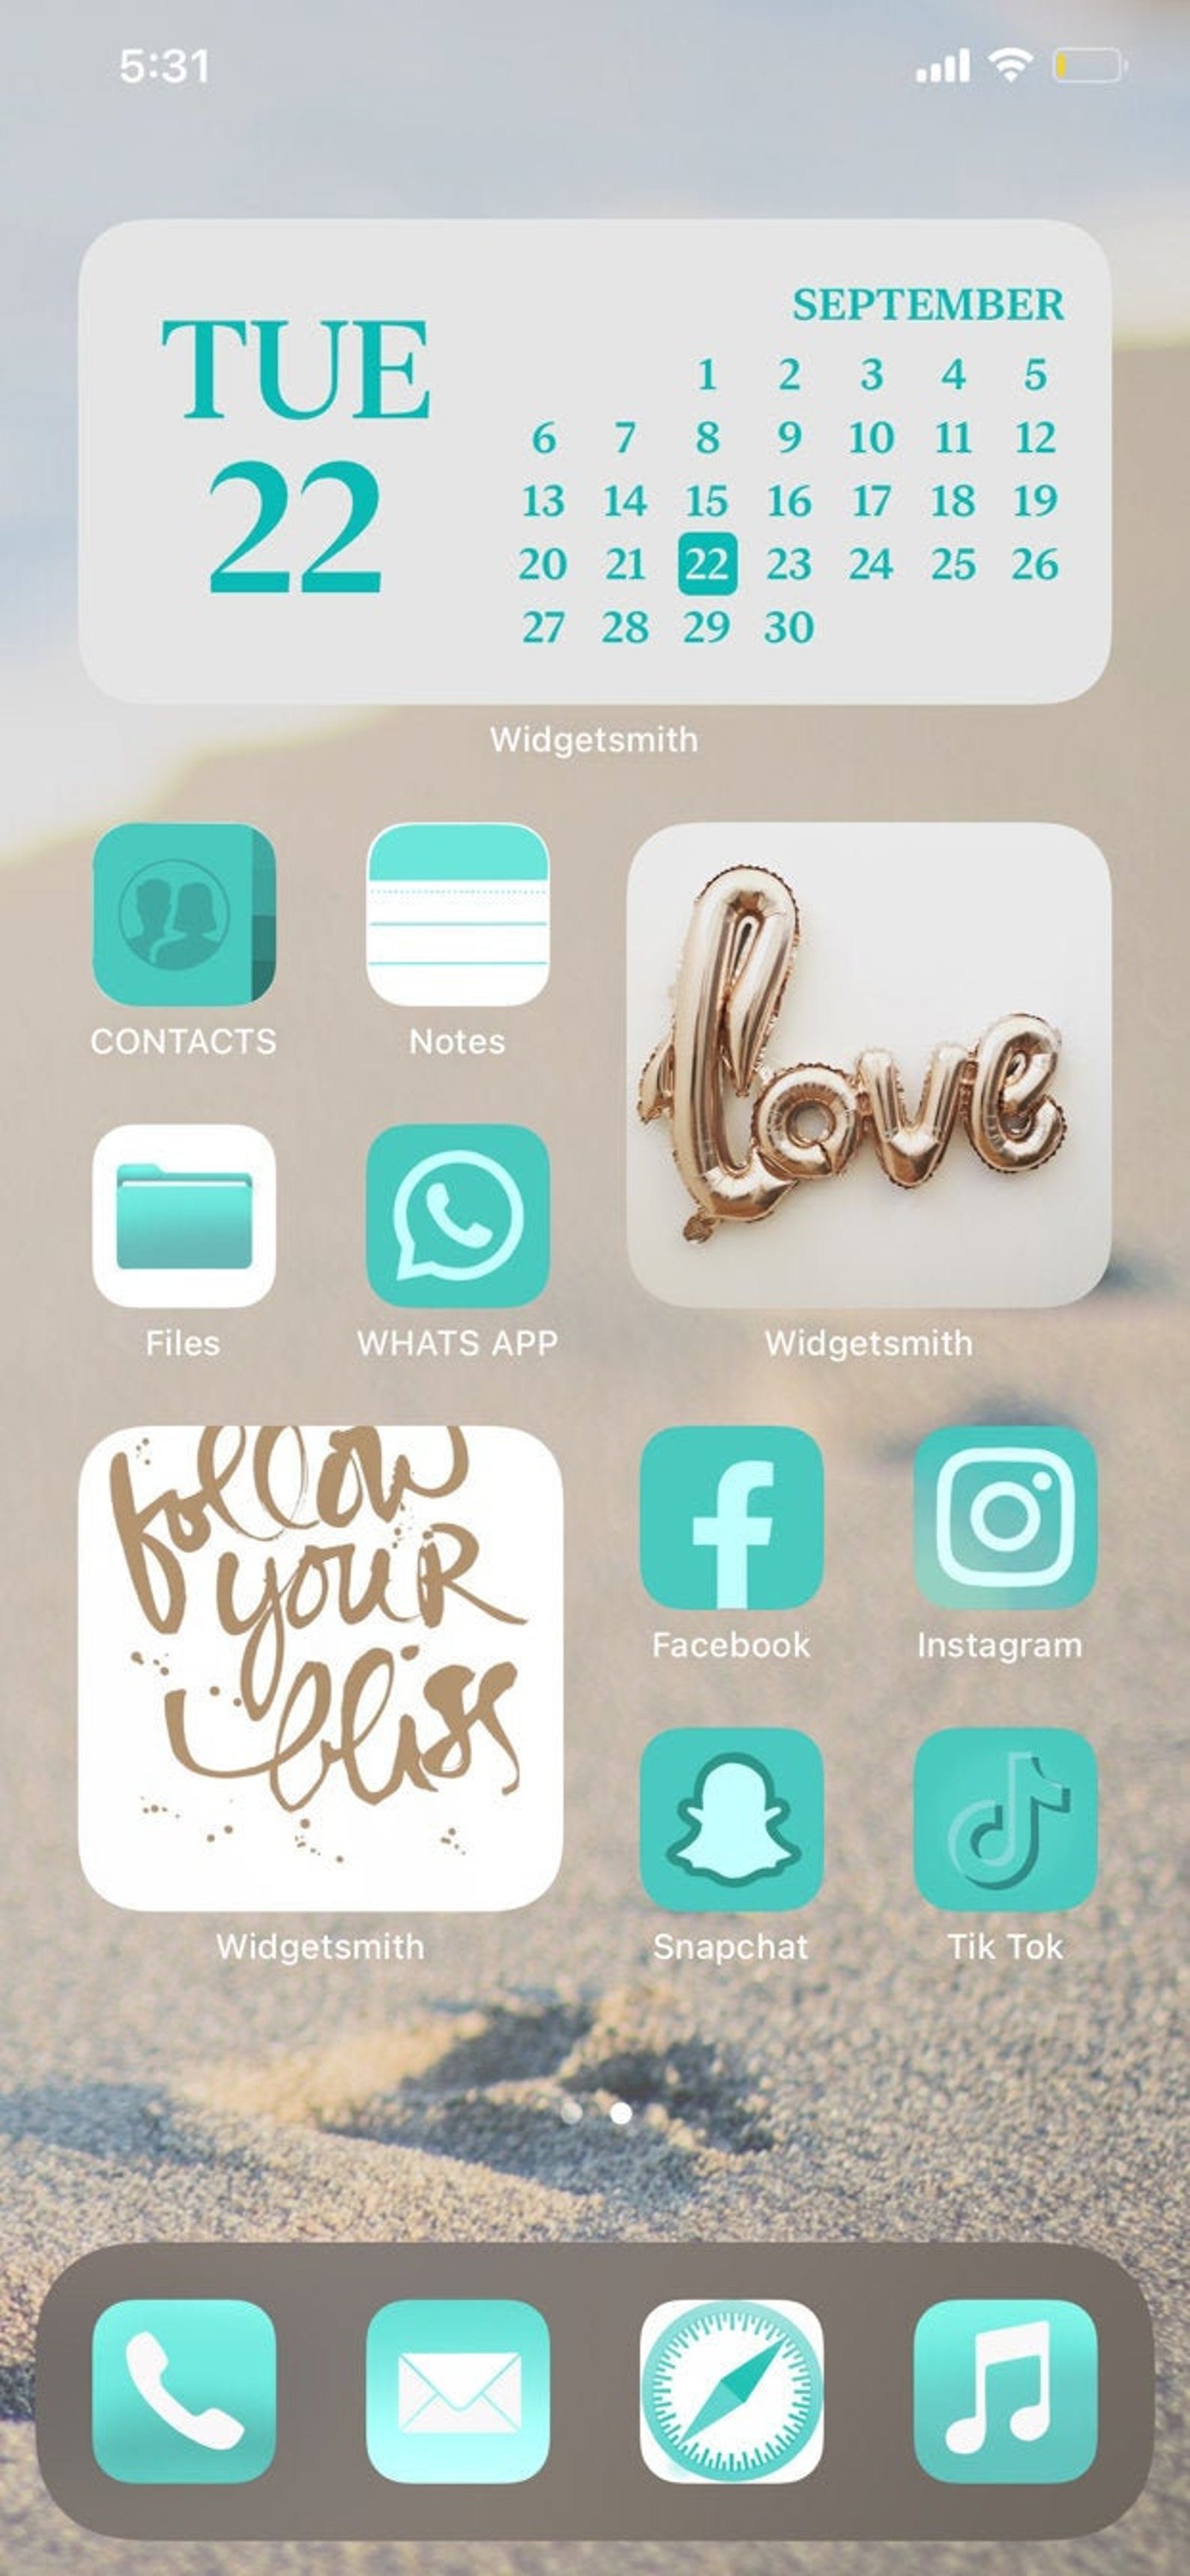 Phone icon aesthetic - awesomevse